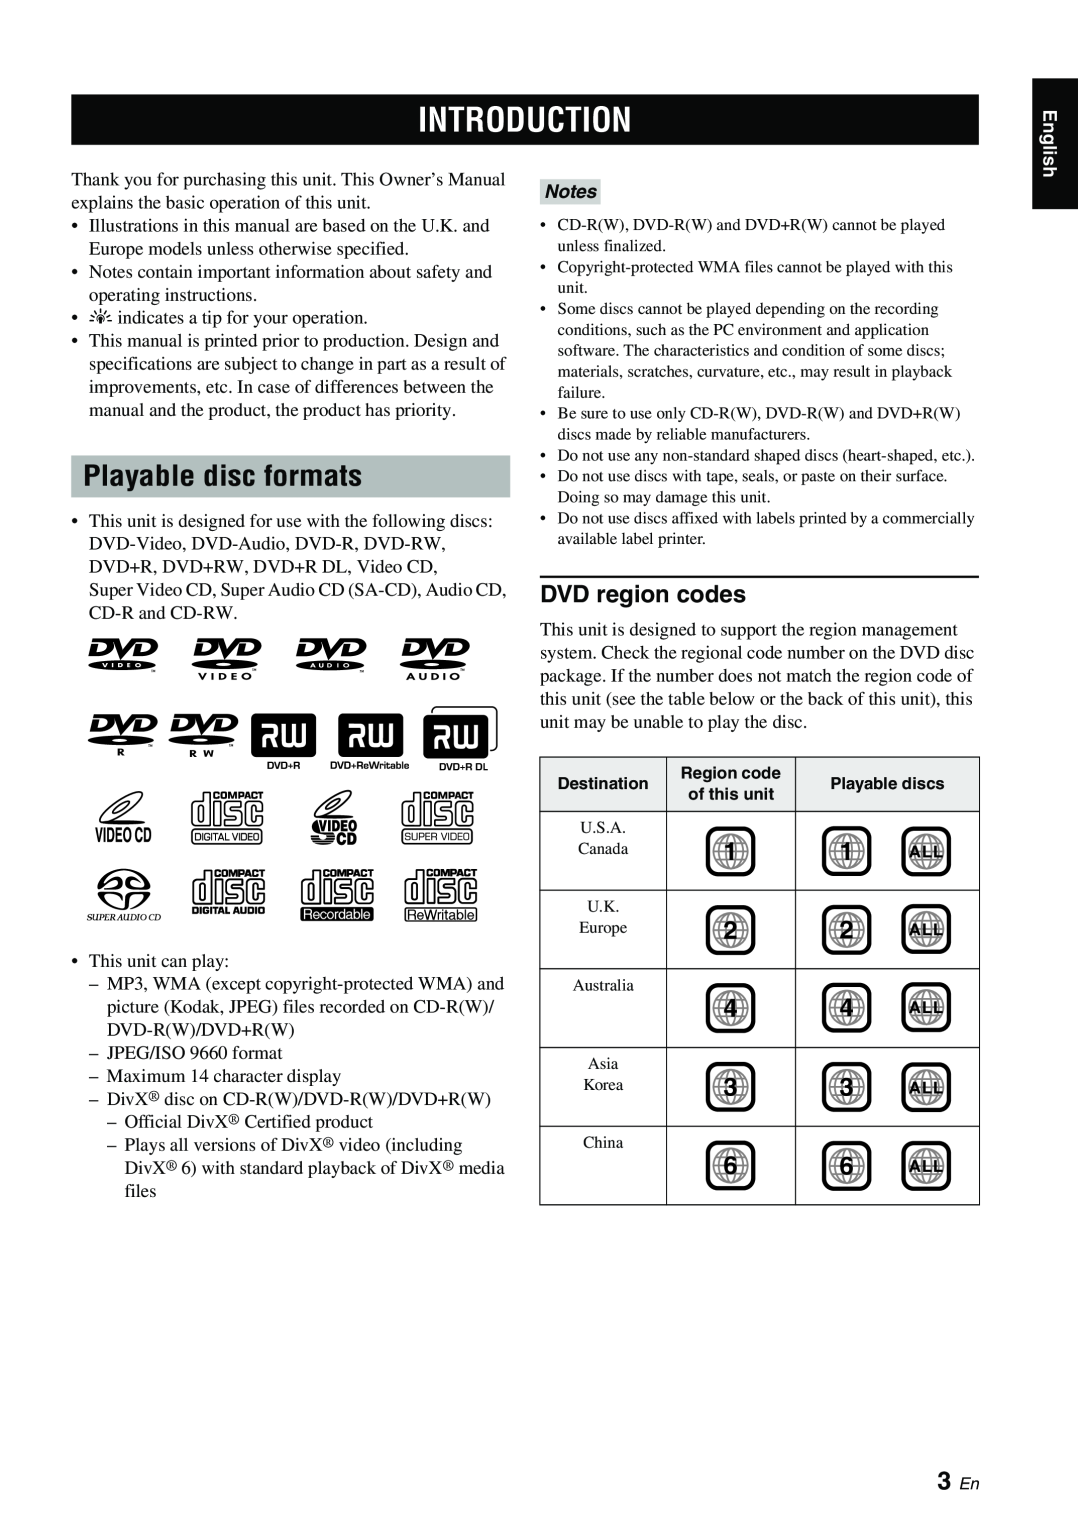 Yamaha DVD-S1700B manual Introduction, Playable disc formats, 3 En 